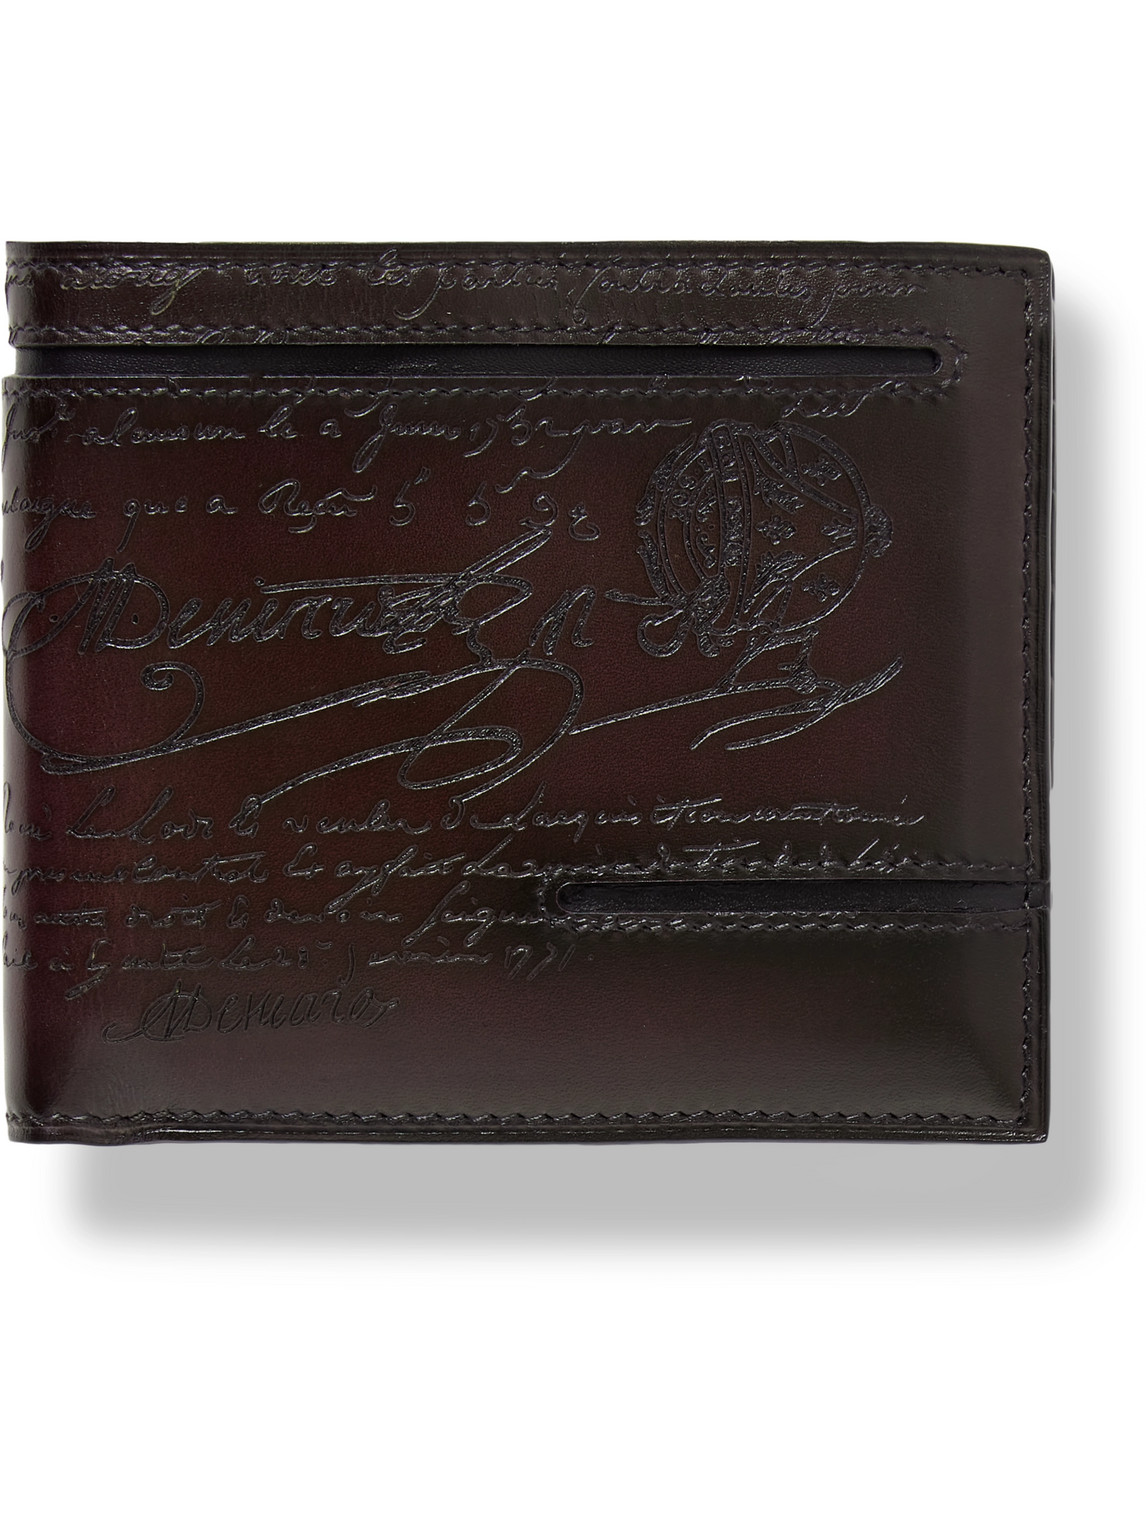 Makore Neo Taglio Scritto Venezia Leather Billfold Wallet